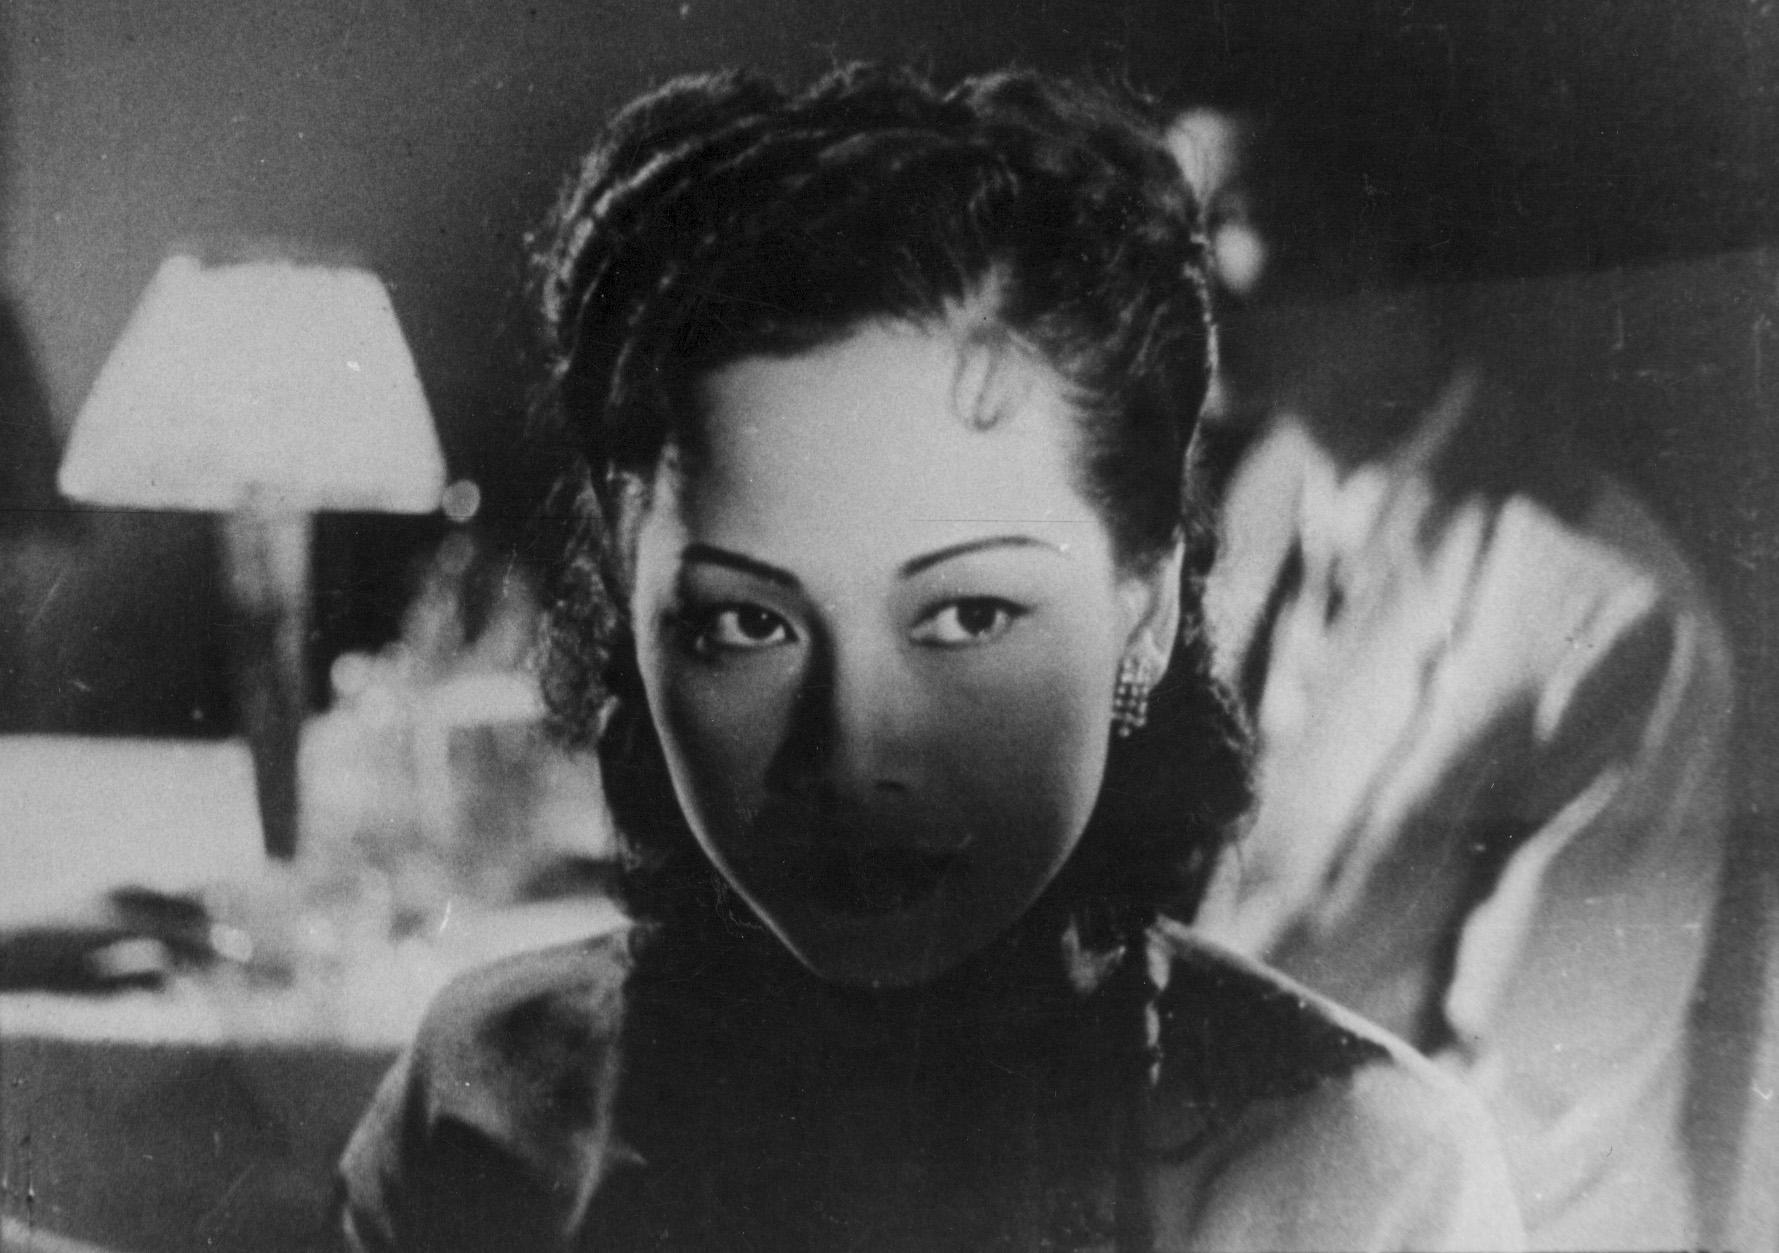 康樂及文化事務署香港電影資料館由七月至十二月，逢星期五上午十一時的「影畫早晨」節目，將精選放映18齣芳艷芬經典作品，讓戲迷重溫這位「花旦王」精湛演技。圖示《紅菱血（下集）》（1951）劇照。